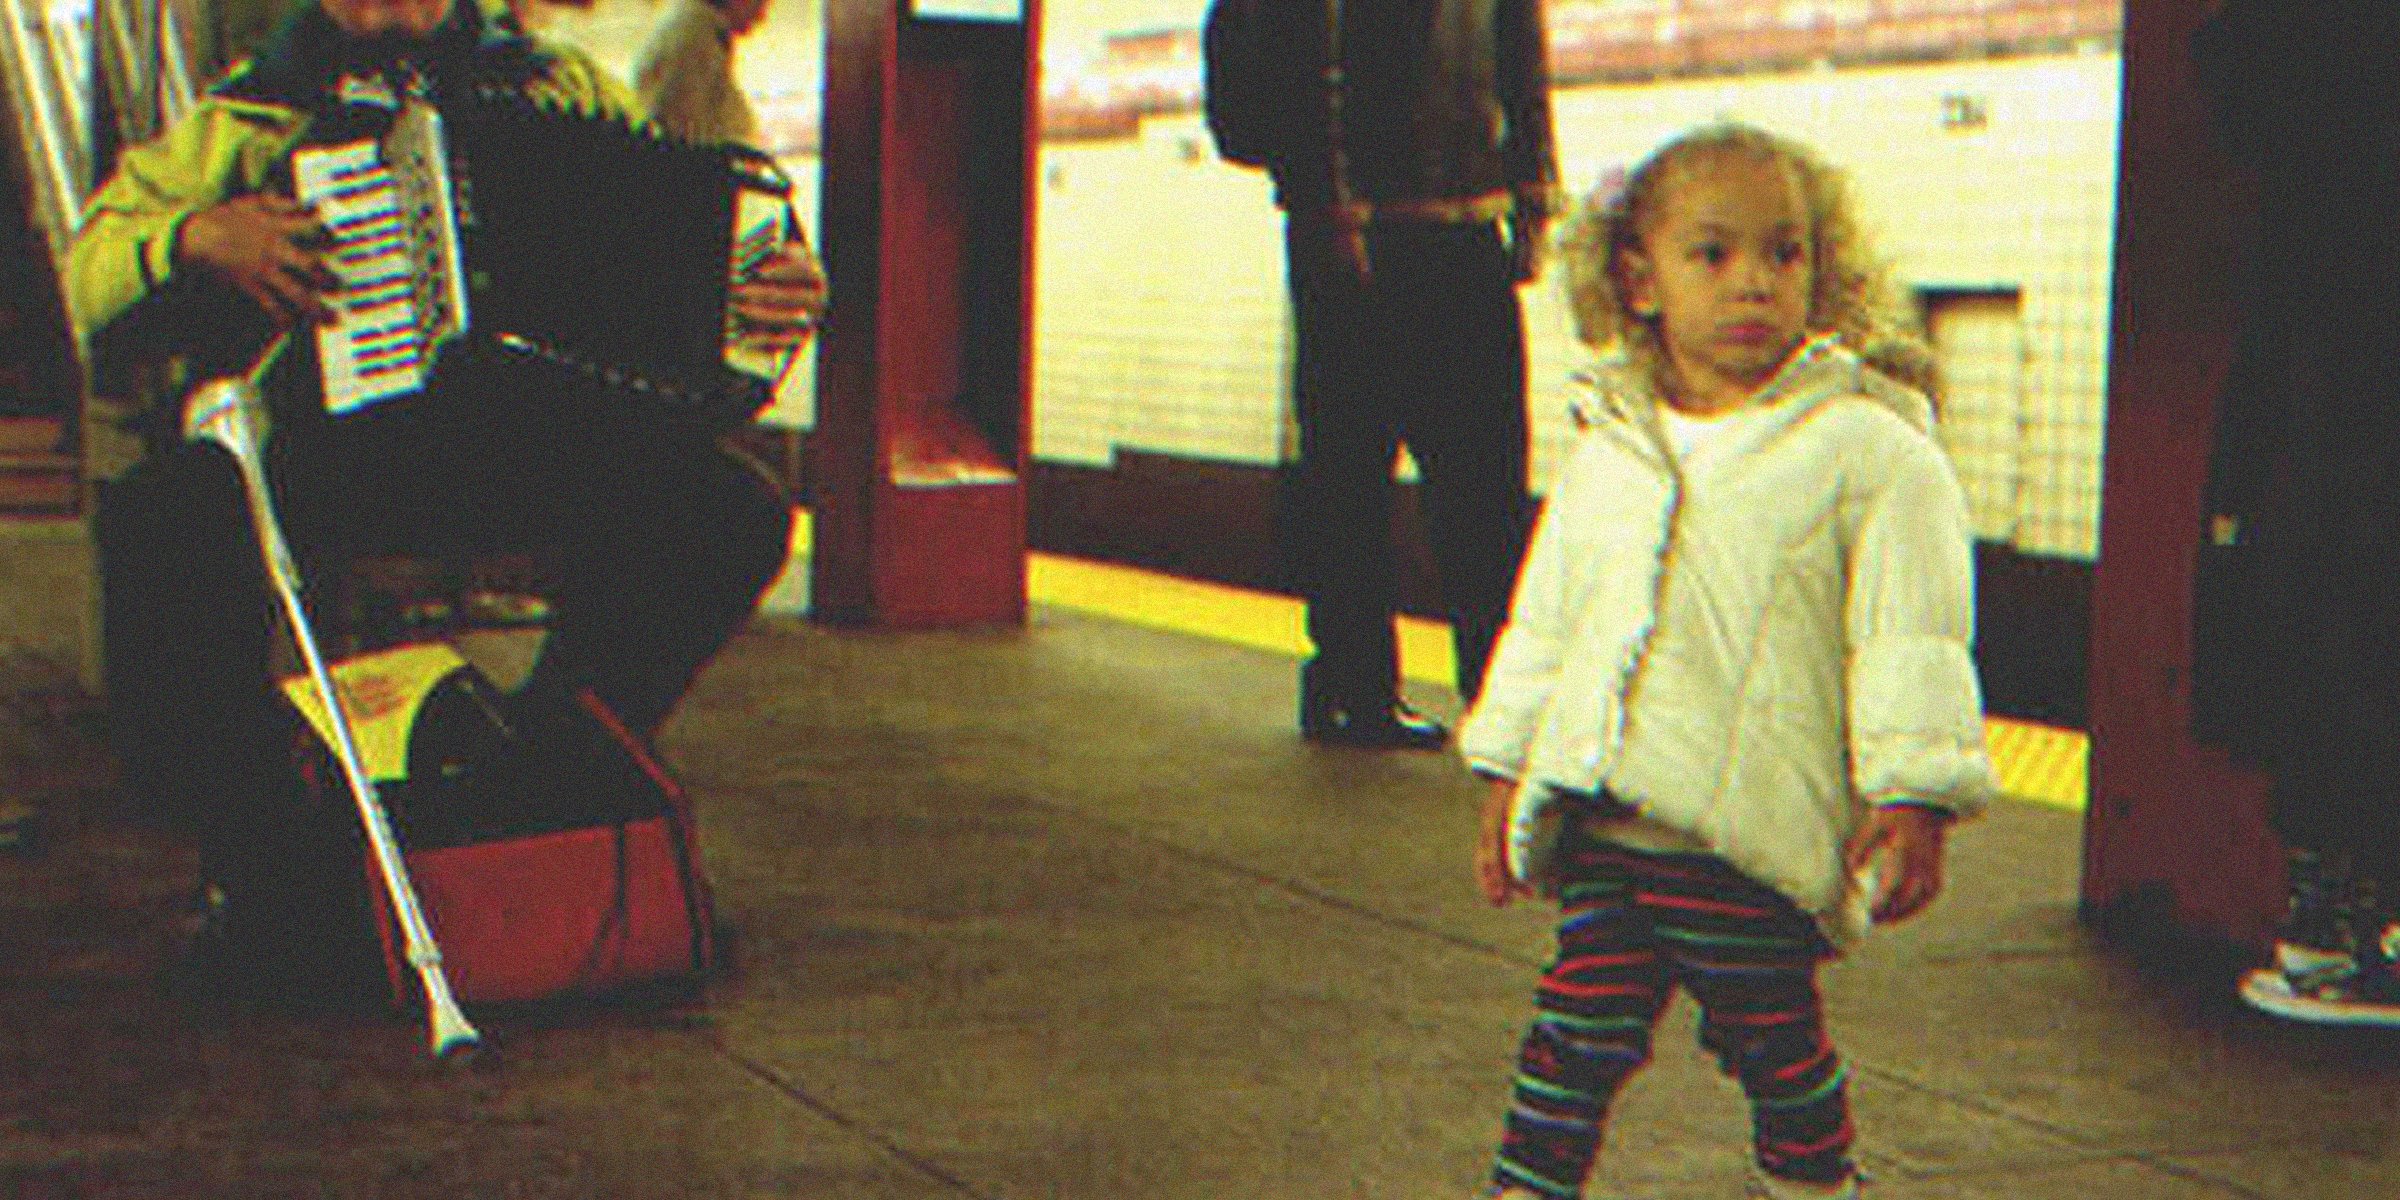 Ein Mädchen in der U-Bahn | Quelle: Flickr.com/theotherpete (CC BY 2.0)